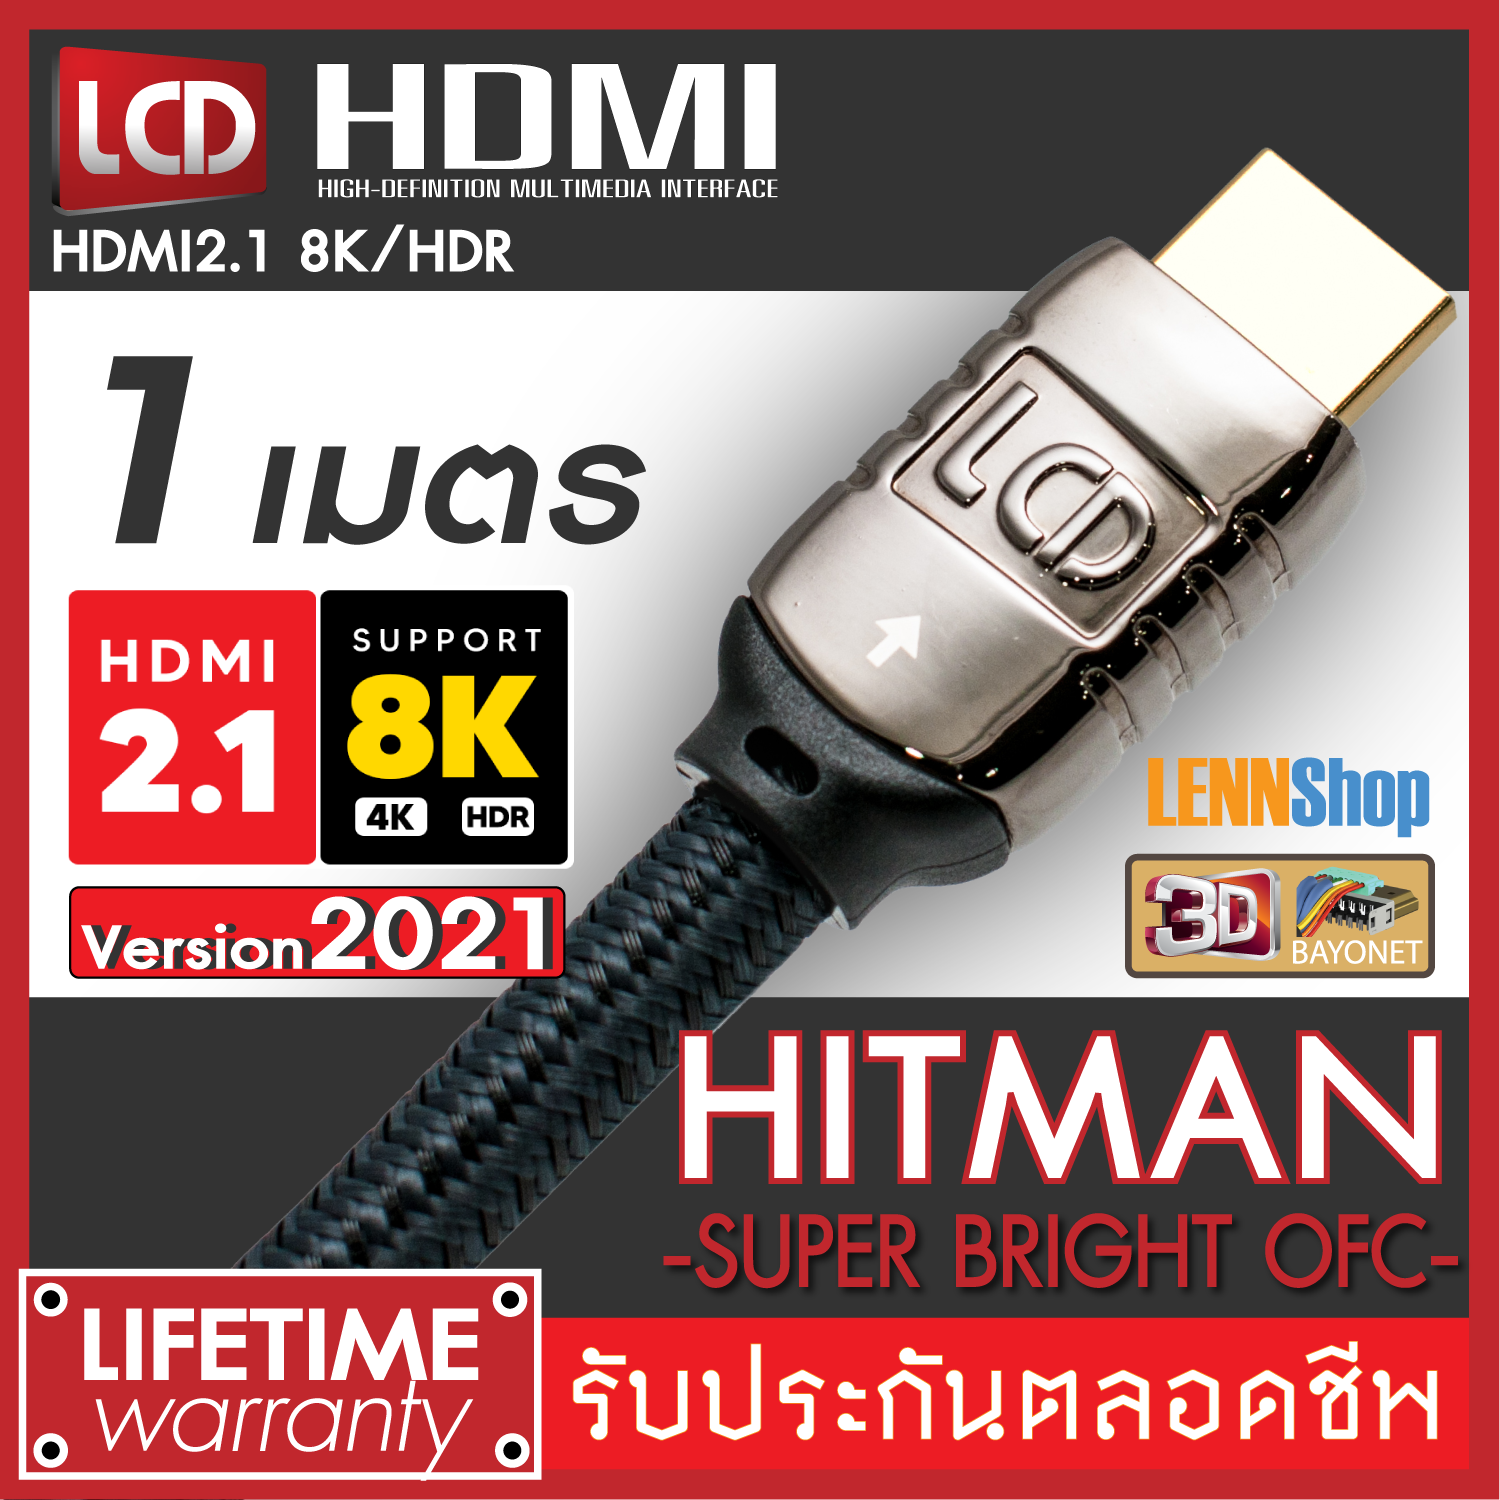 HITMAN 1M HDMI New Version 2021 HDMI OFC ของแท้ 8K/HDR HDMI V2.1 รองรับระบบภาพ 8K/HDR , 3D, ARC, Dolby Vision, H10 ระบบเสียง Dolby Atmos DtsX / ยาว 1 เมตร  / LENNSHOP